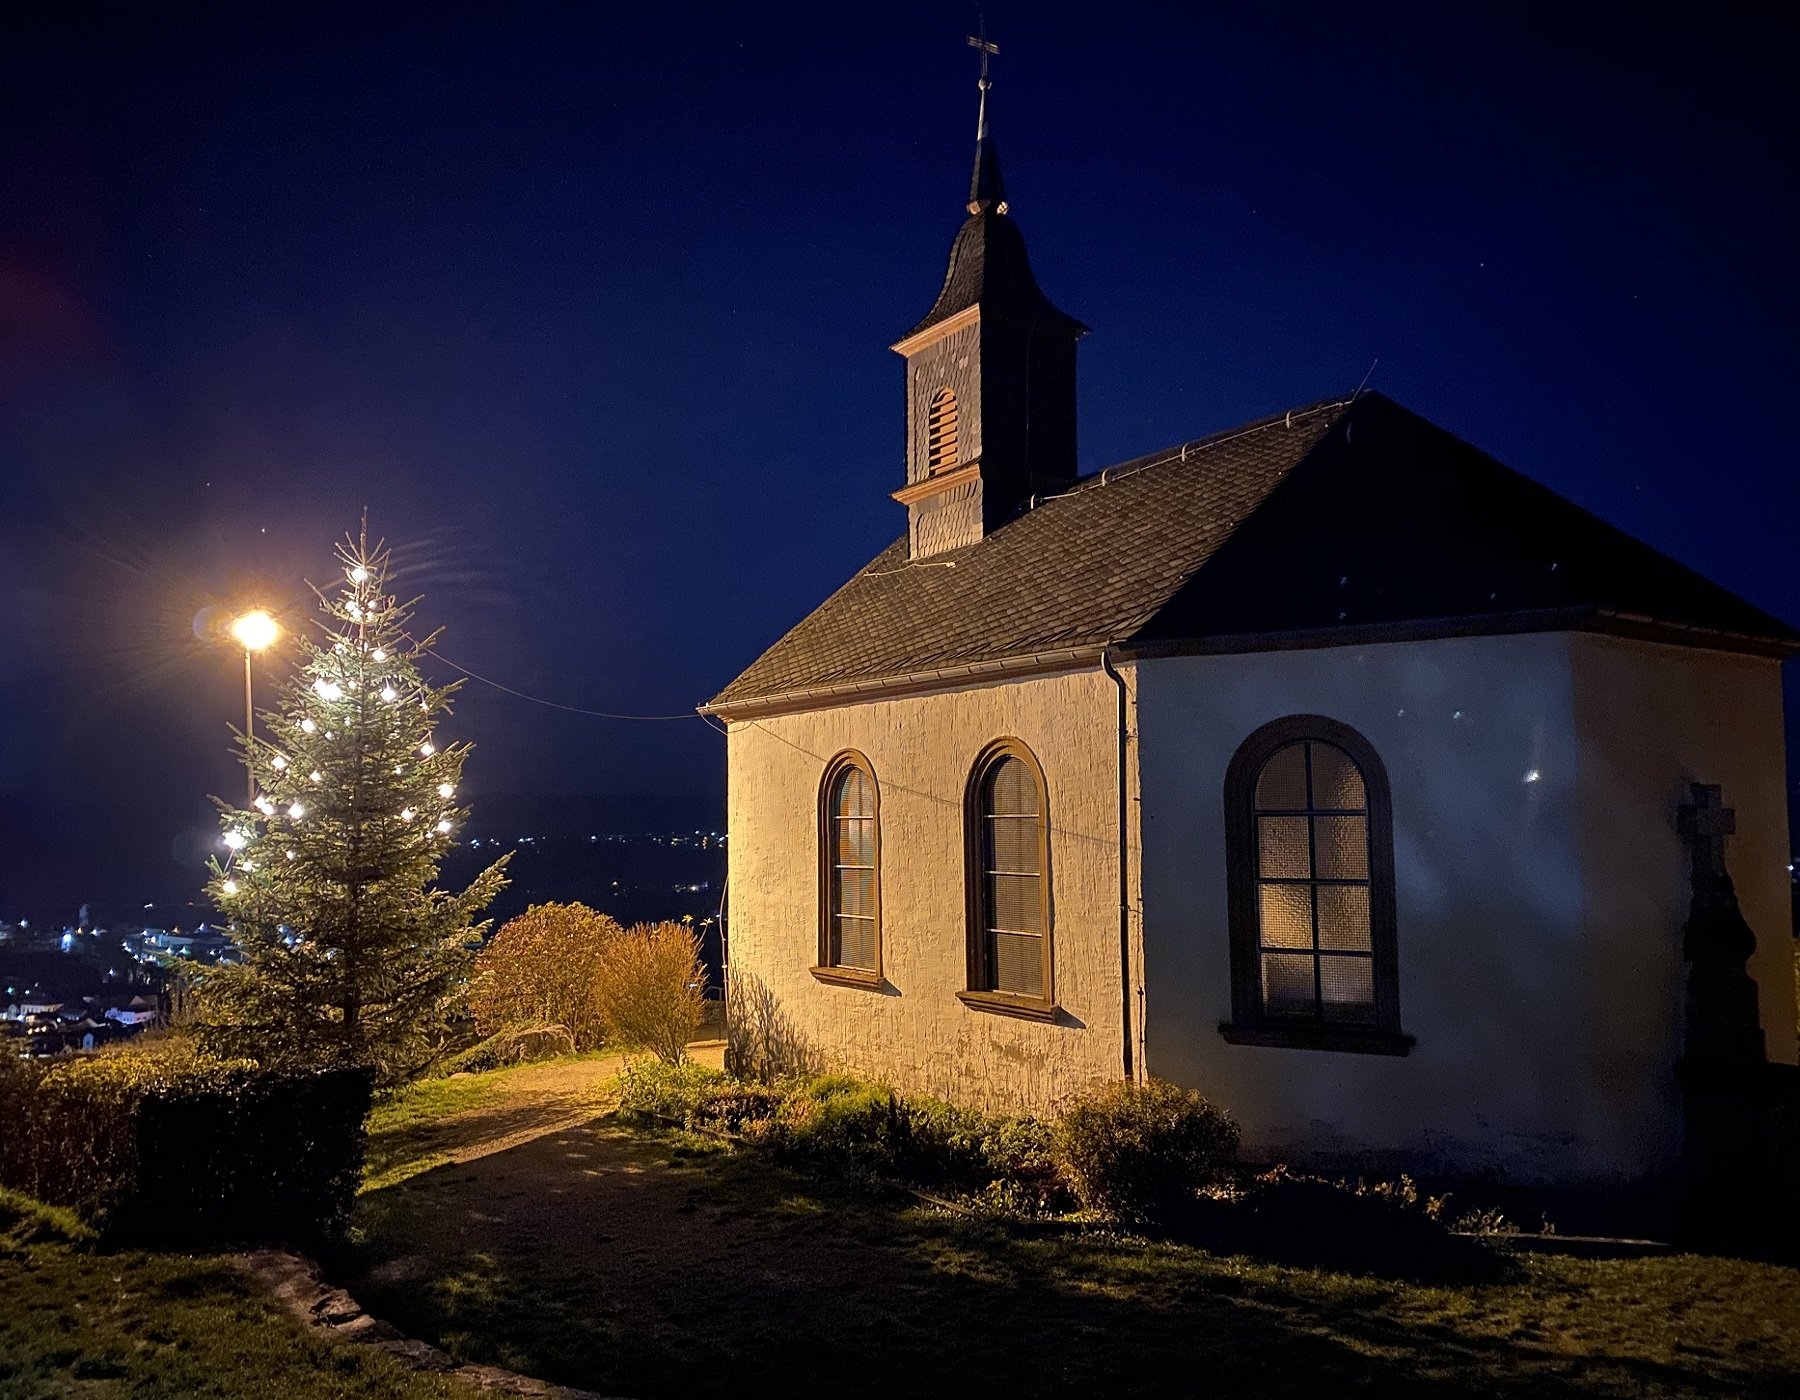 Das Foto zeigt die Kreuzbergkapelle bei Nacht, der Tannenbaum vor der Kapelle ist beleuchtet.